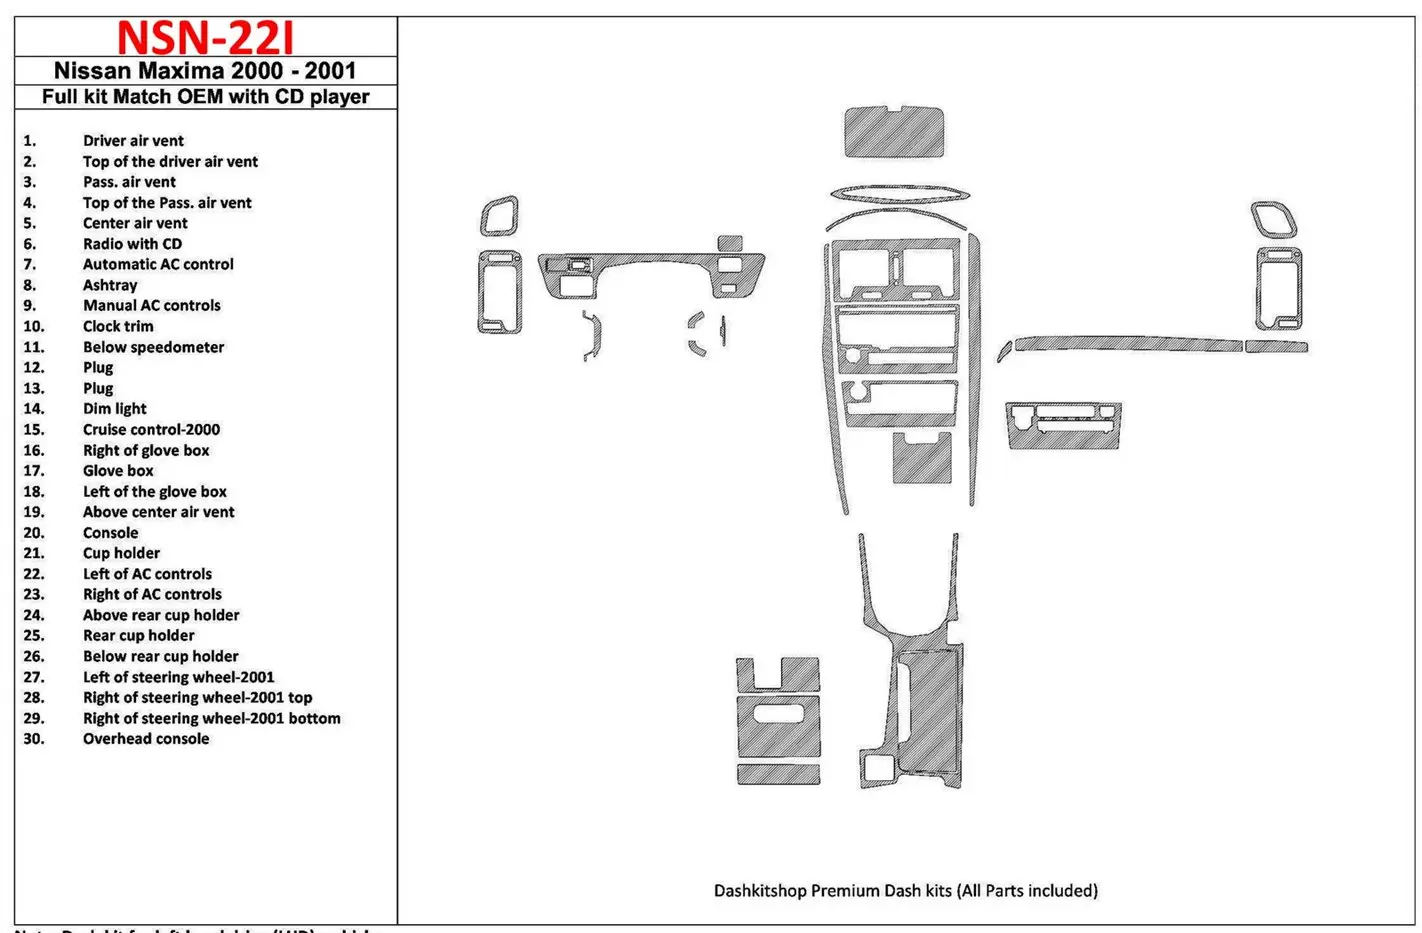 Nissan Maxima 2000-2001 Door panels, 4 Parts set BD Kit la décoration du tableau de bord - 1 - habillage decor de tableau de bor